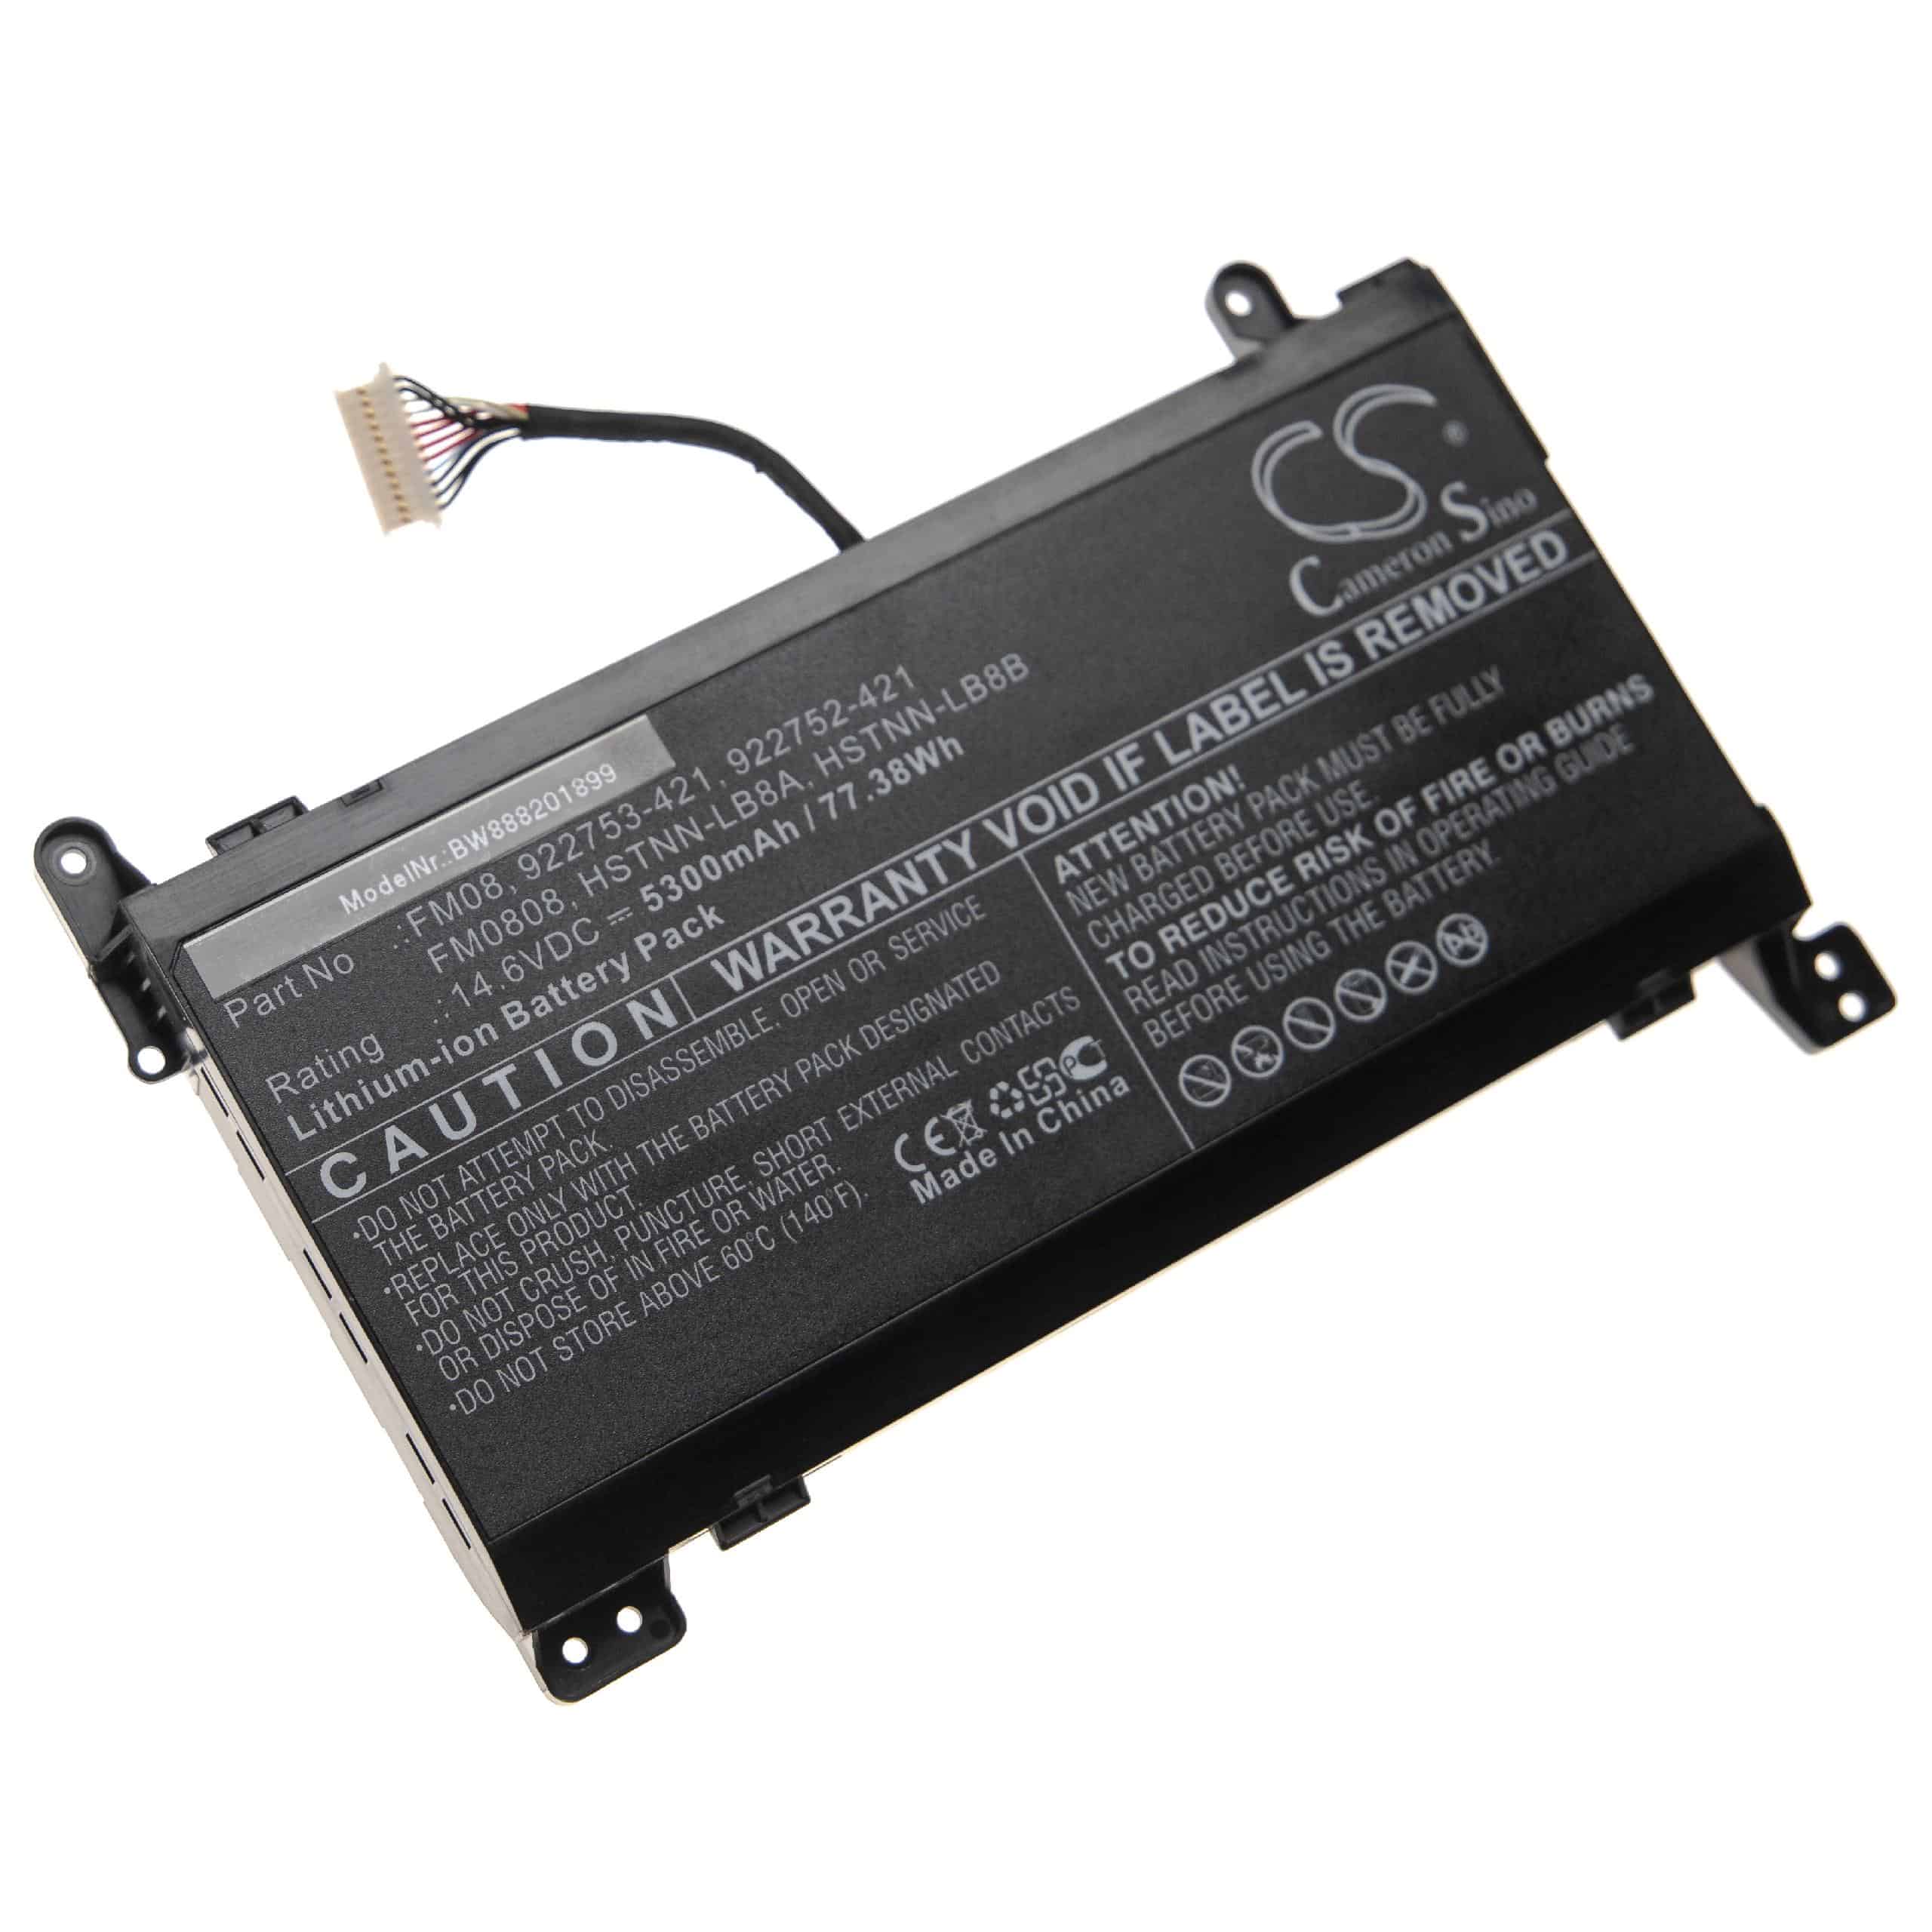 Batterie remplace HP 922753-421, 922752-421, 922976-855 pour ordinateur portable - 5300mAh 14,6V Li-ion, noir